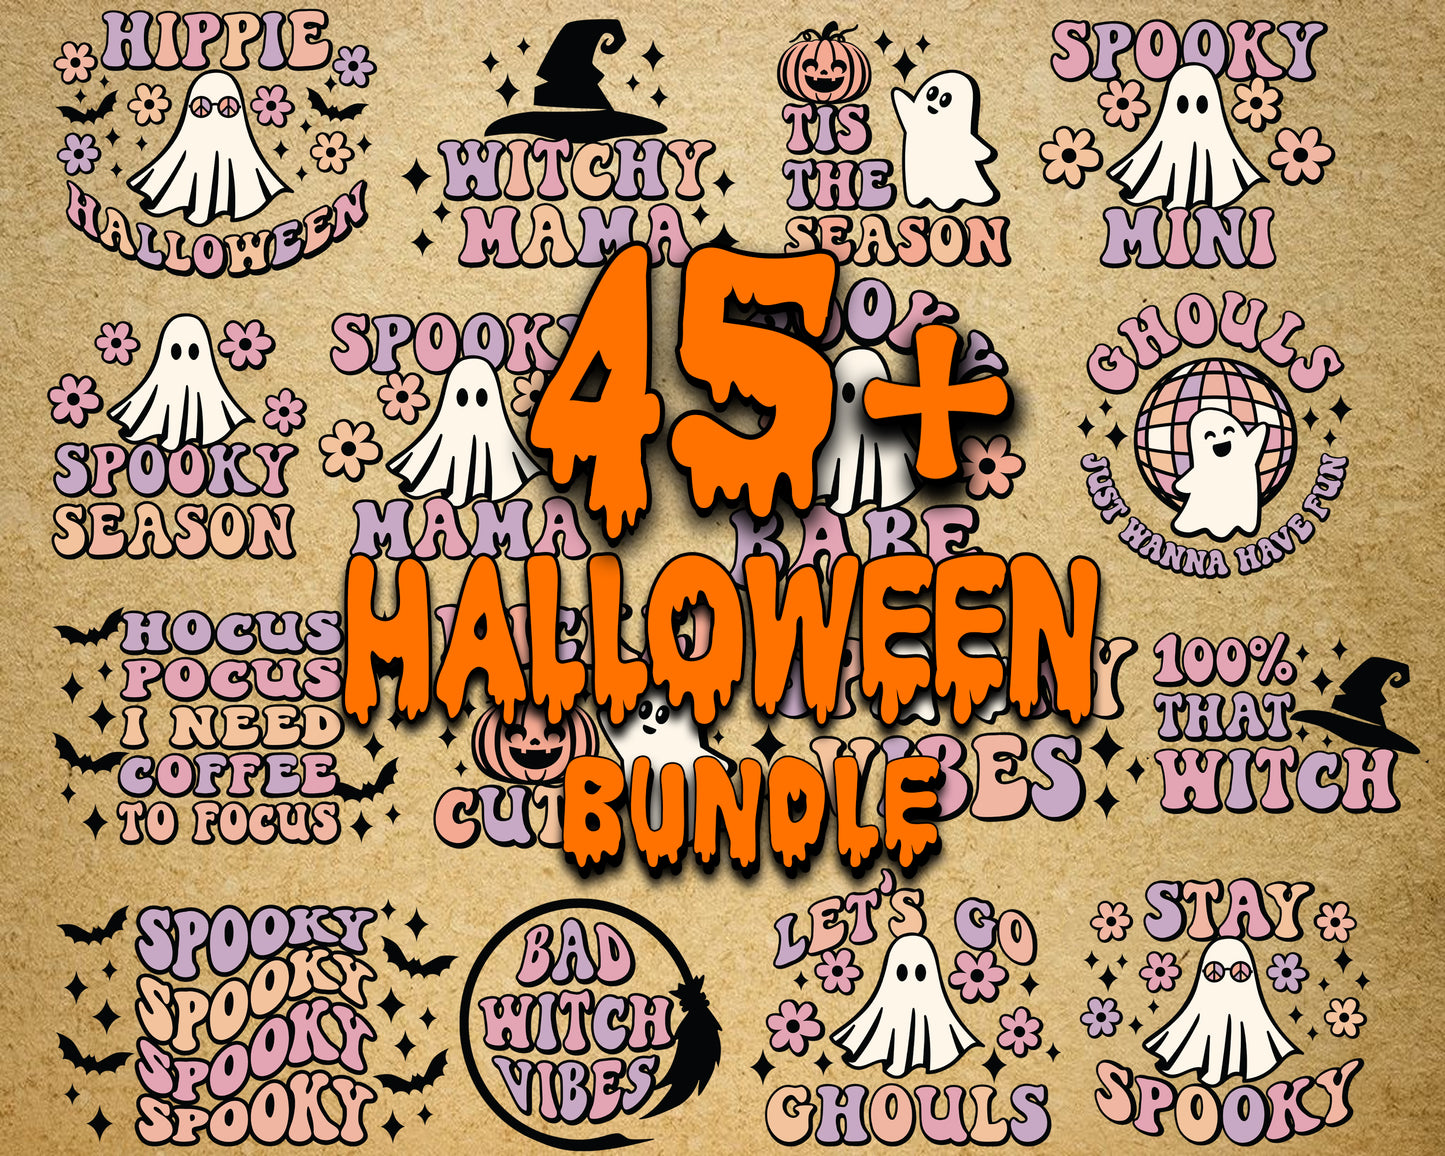 Ultimate giga bundle halloween svg dxf eps png file ,Mega bundle halloween  cricut, for Cricut, Silhouette, digital, file cut